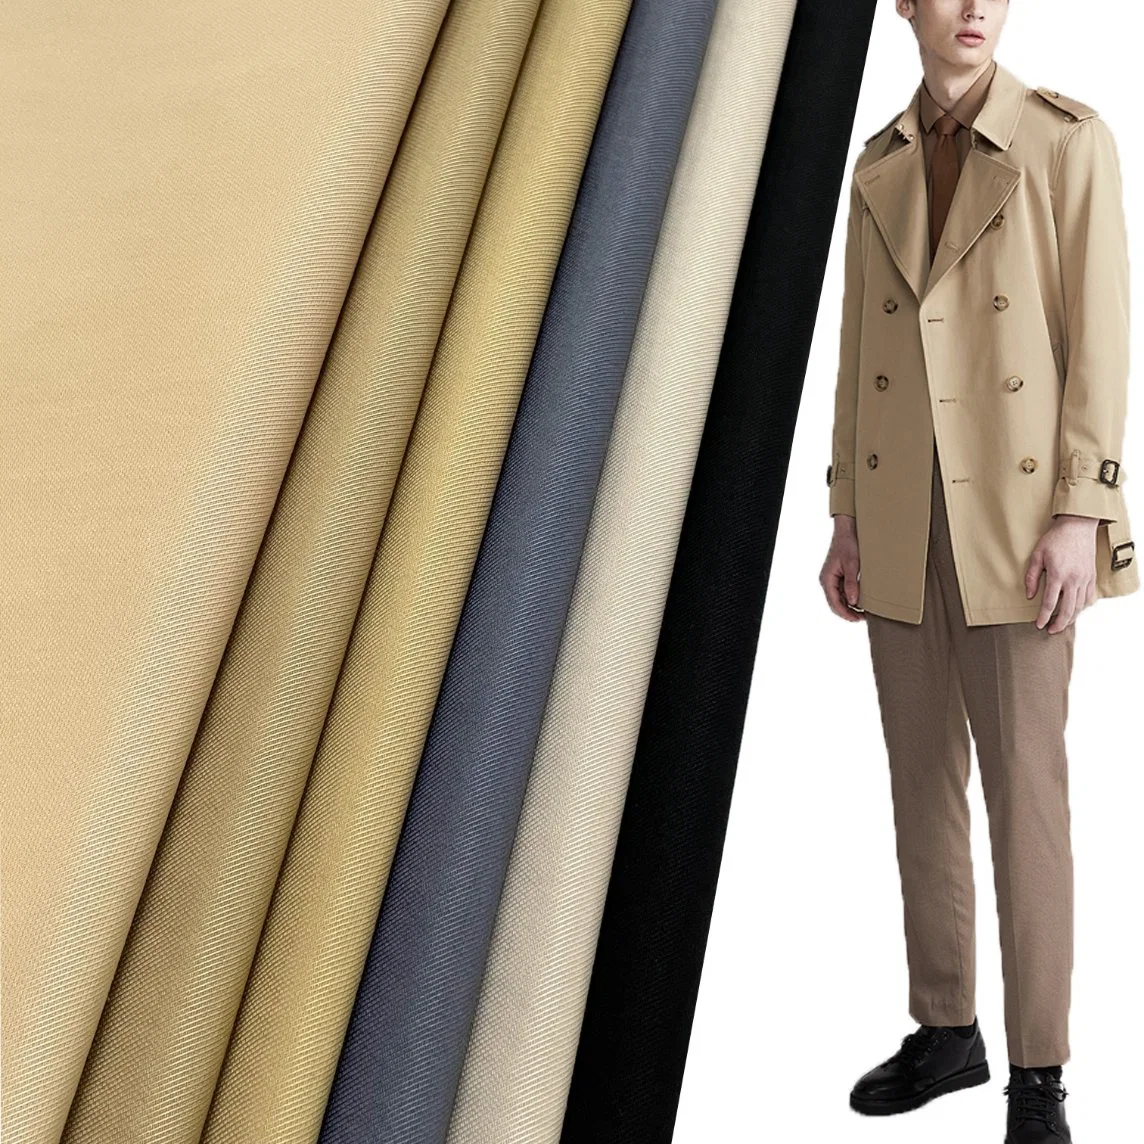 Polyester coton sergé en nylon imperméable de tissu de haute qualité pour la veste coupe-vent trench coat (polyester/nylon)